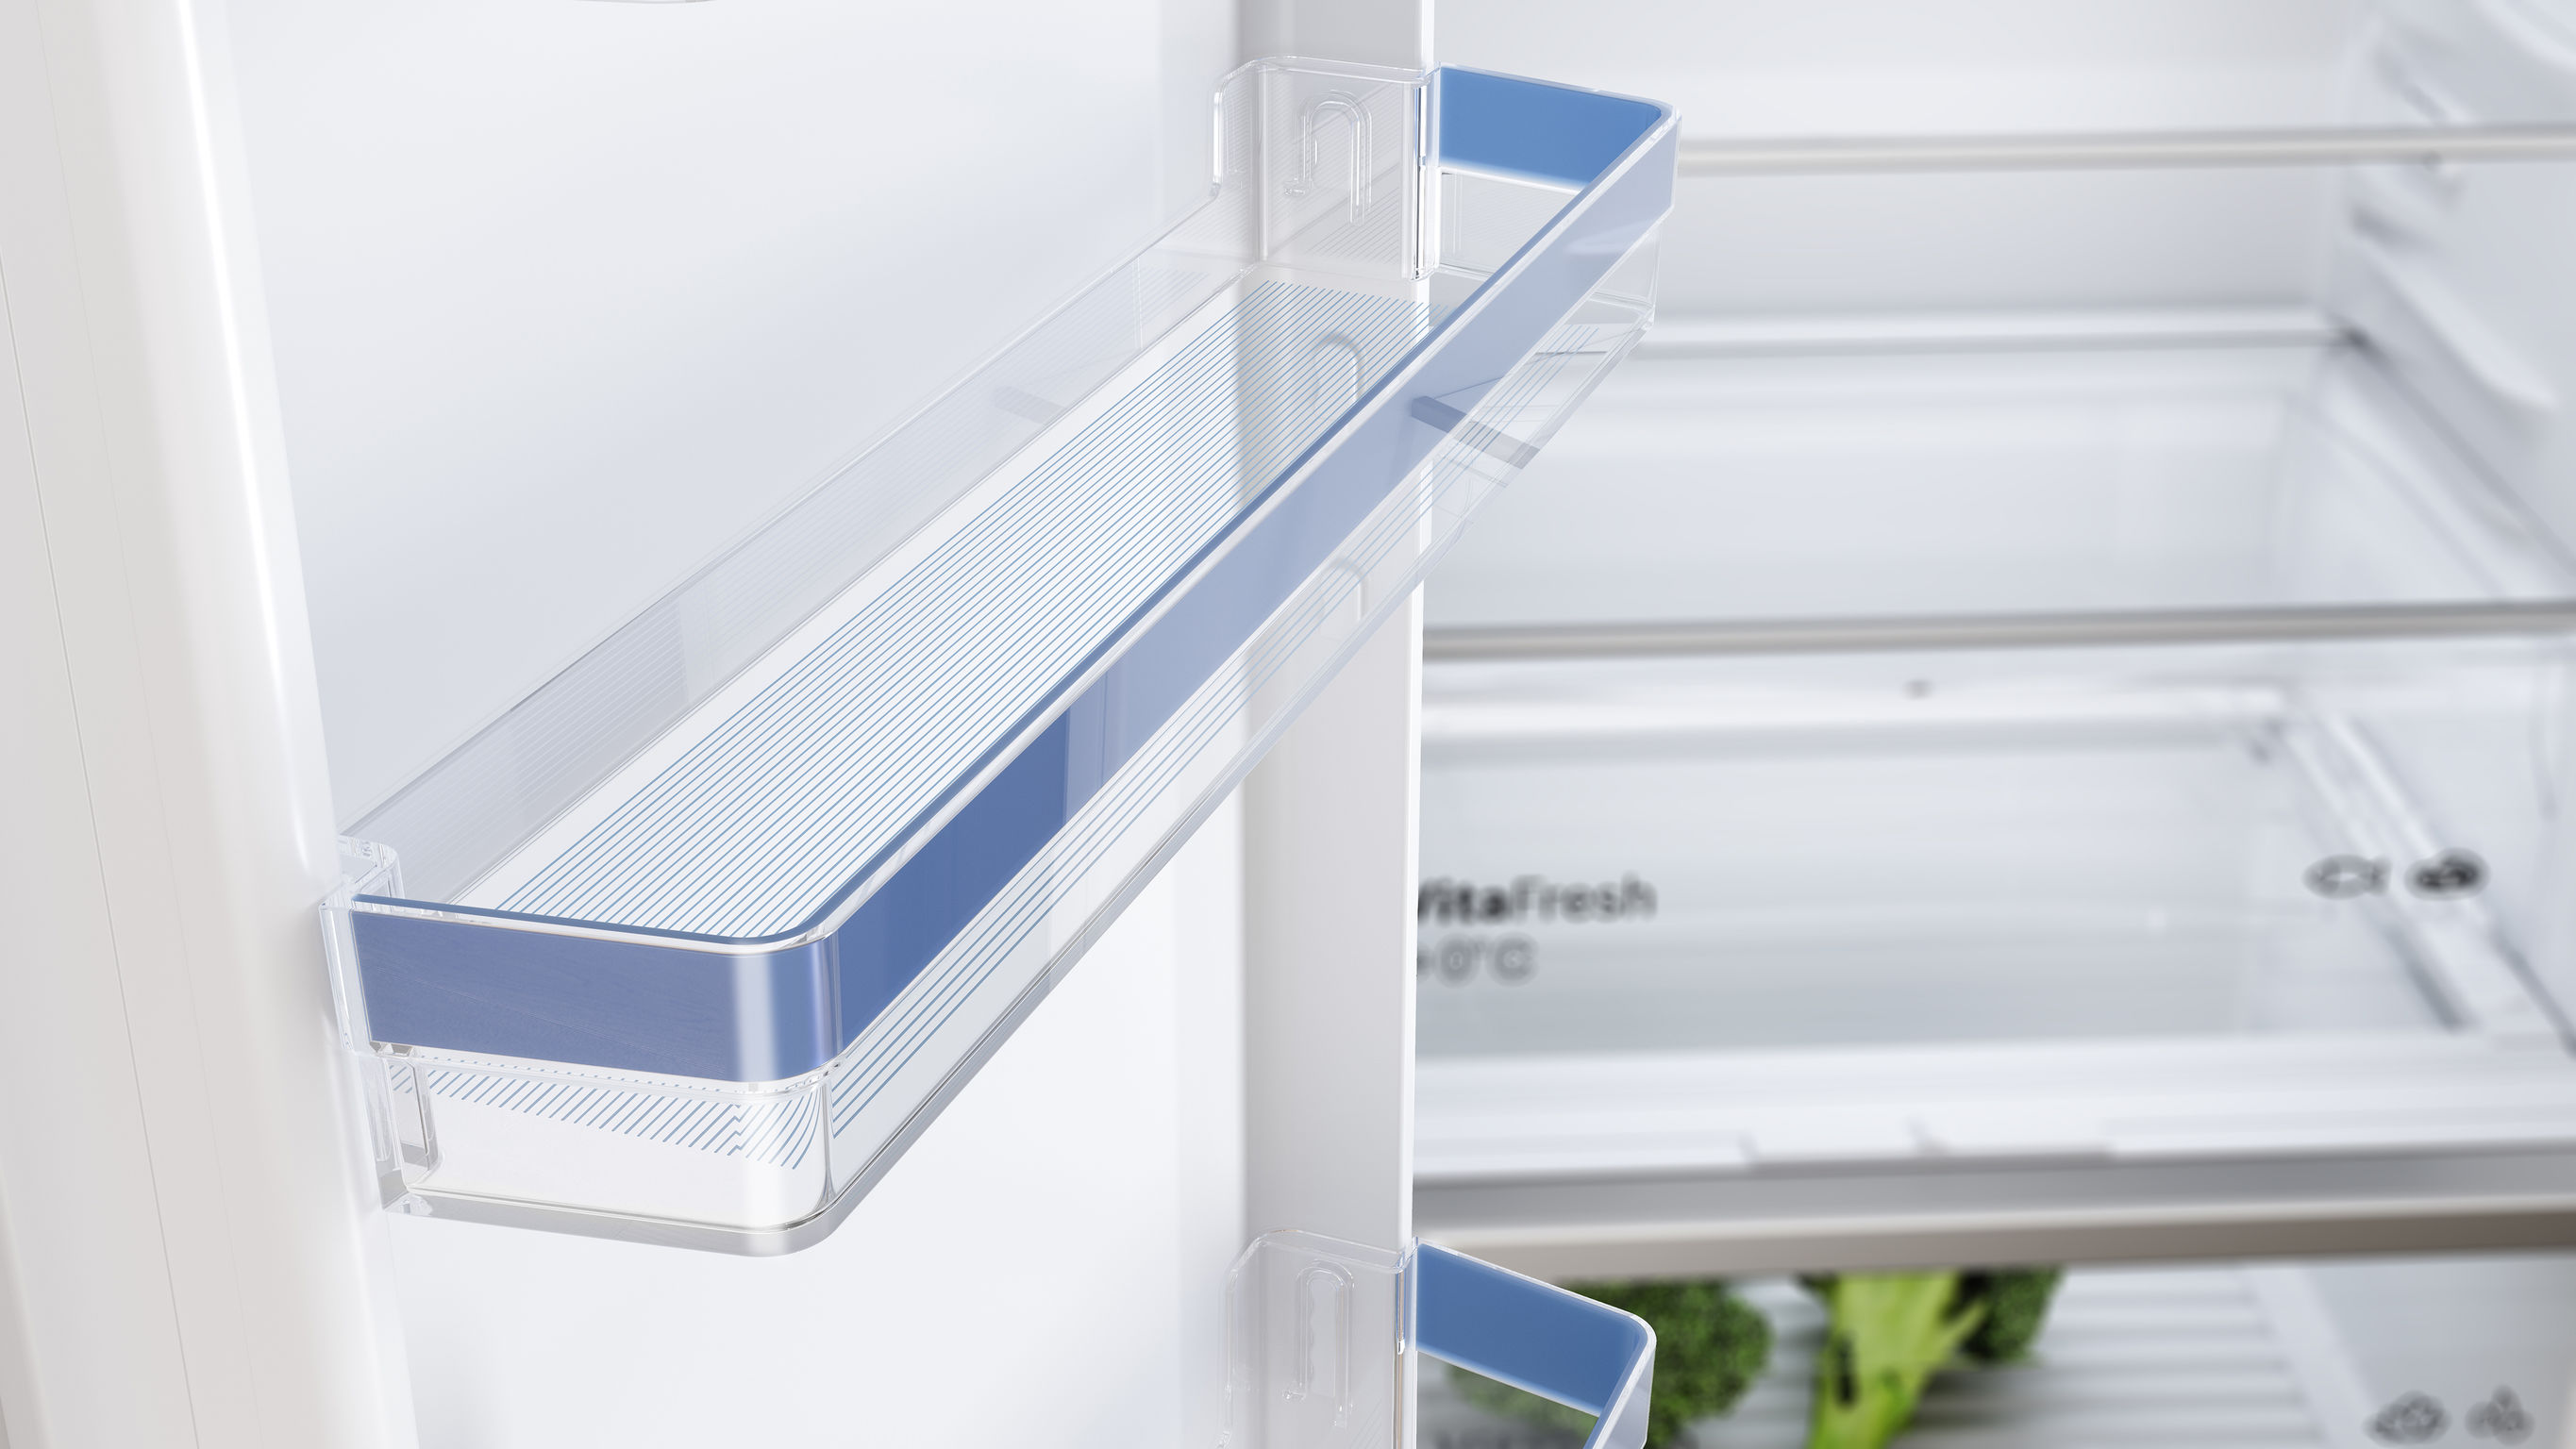 BOSCH Built-in refrigerator